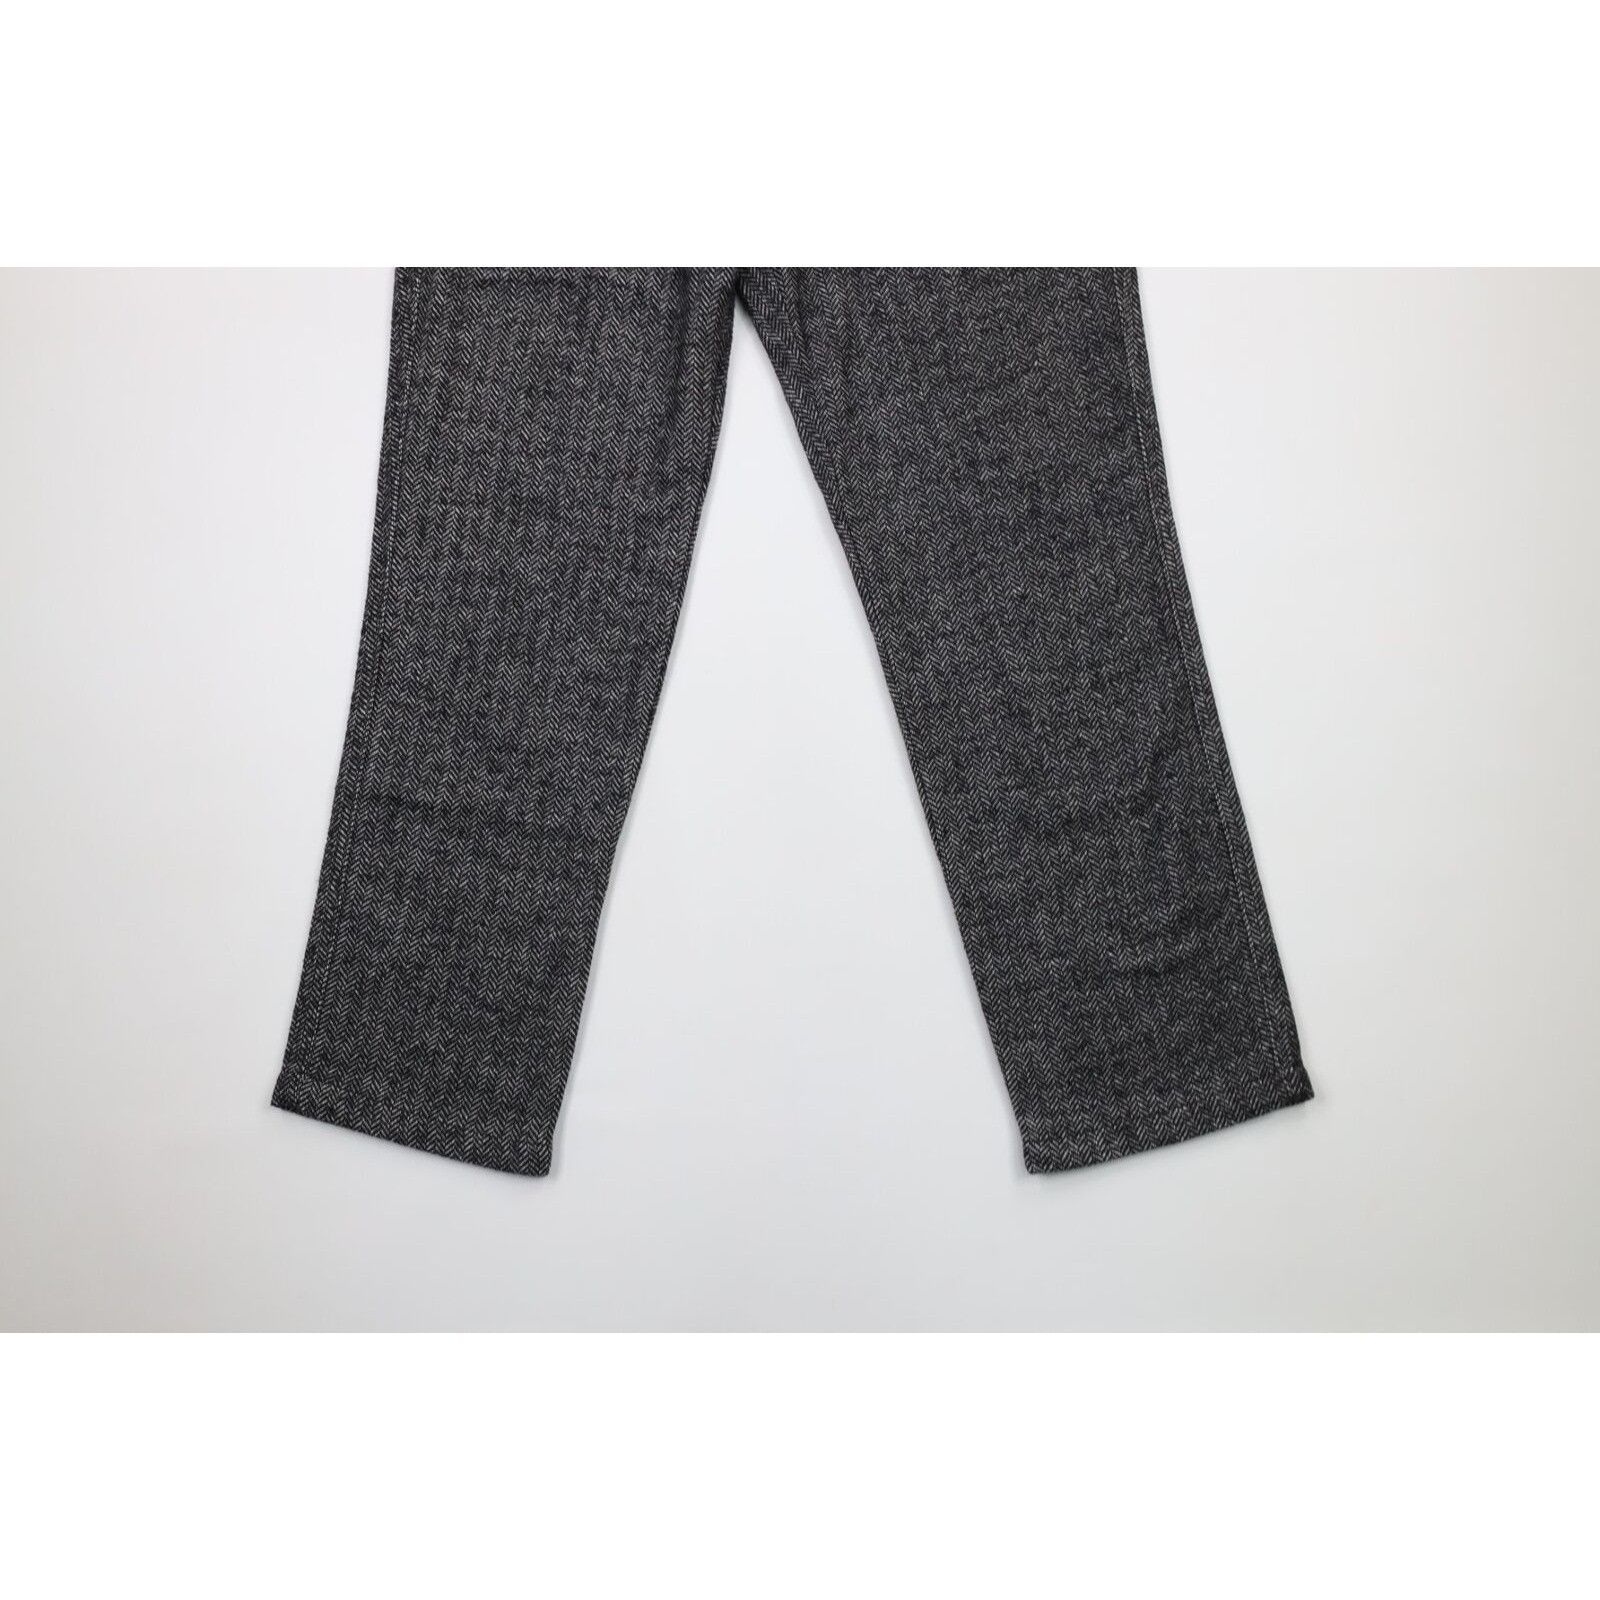 Vintage Vintage 90s Streetwear Tweed Herringbone Chino Pants Size US 34 / EU 50 - 3 Thumbnail